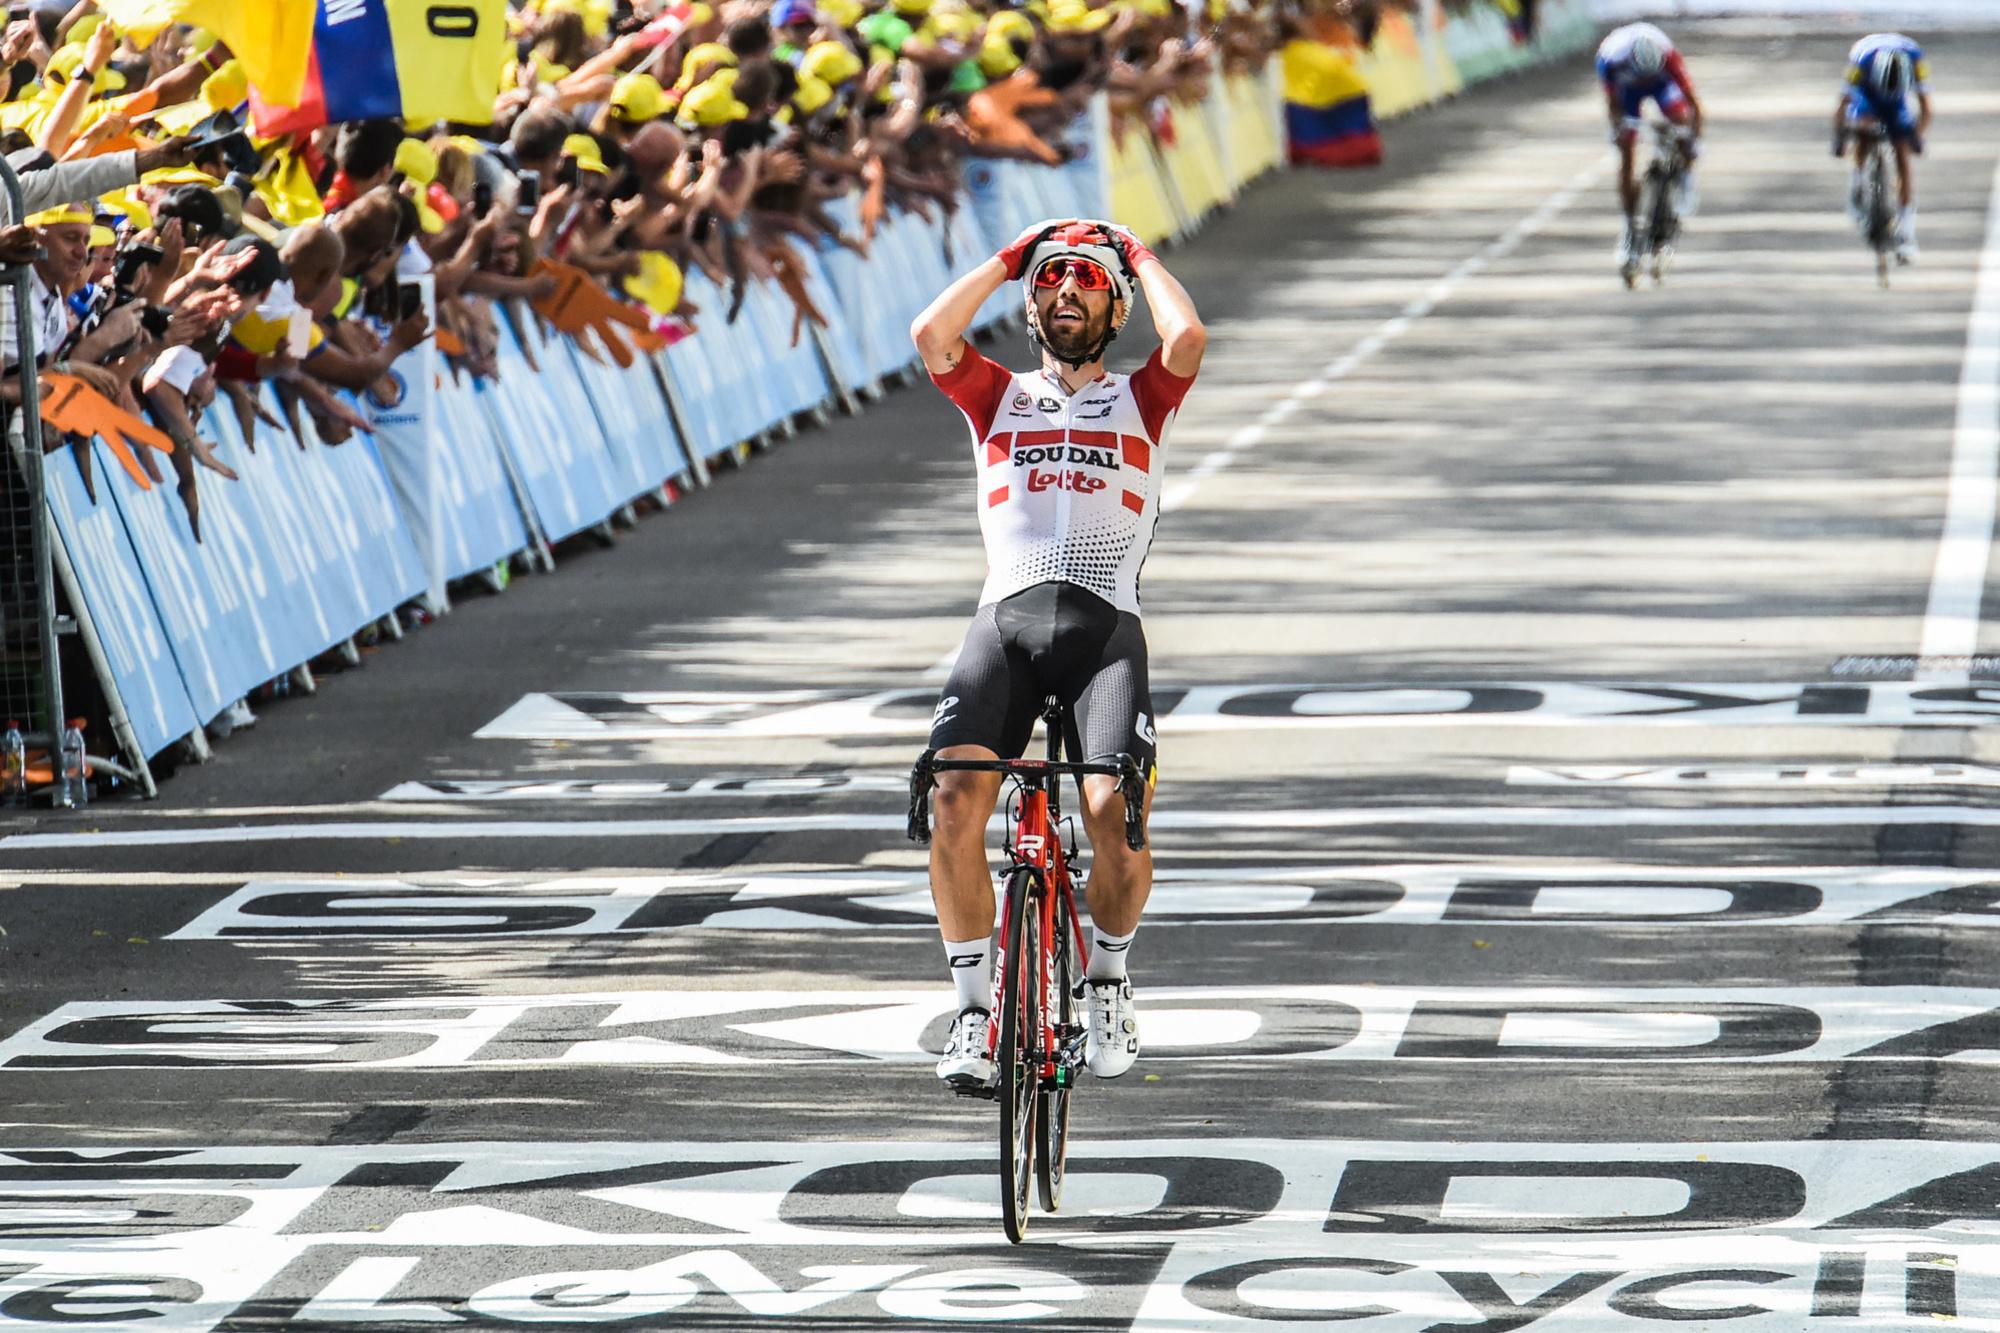 Lors de son solo victorieux sur le Tour de France 2019. Au loin, Alaphilippe et Pinot sont battus.